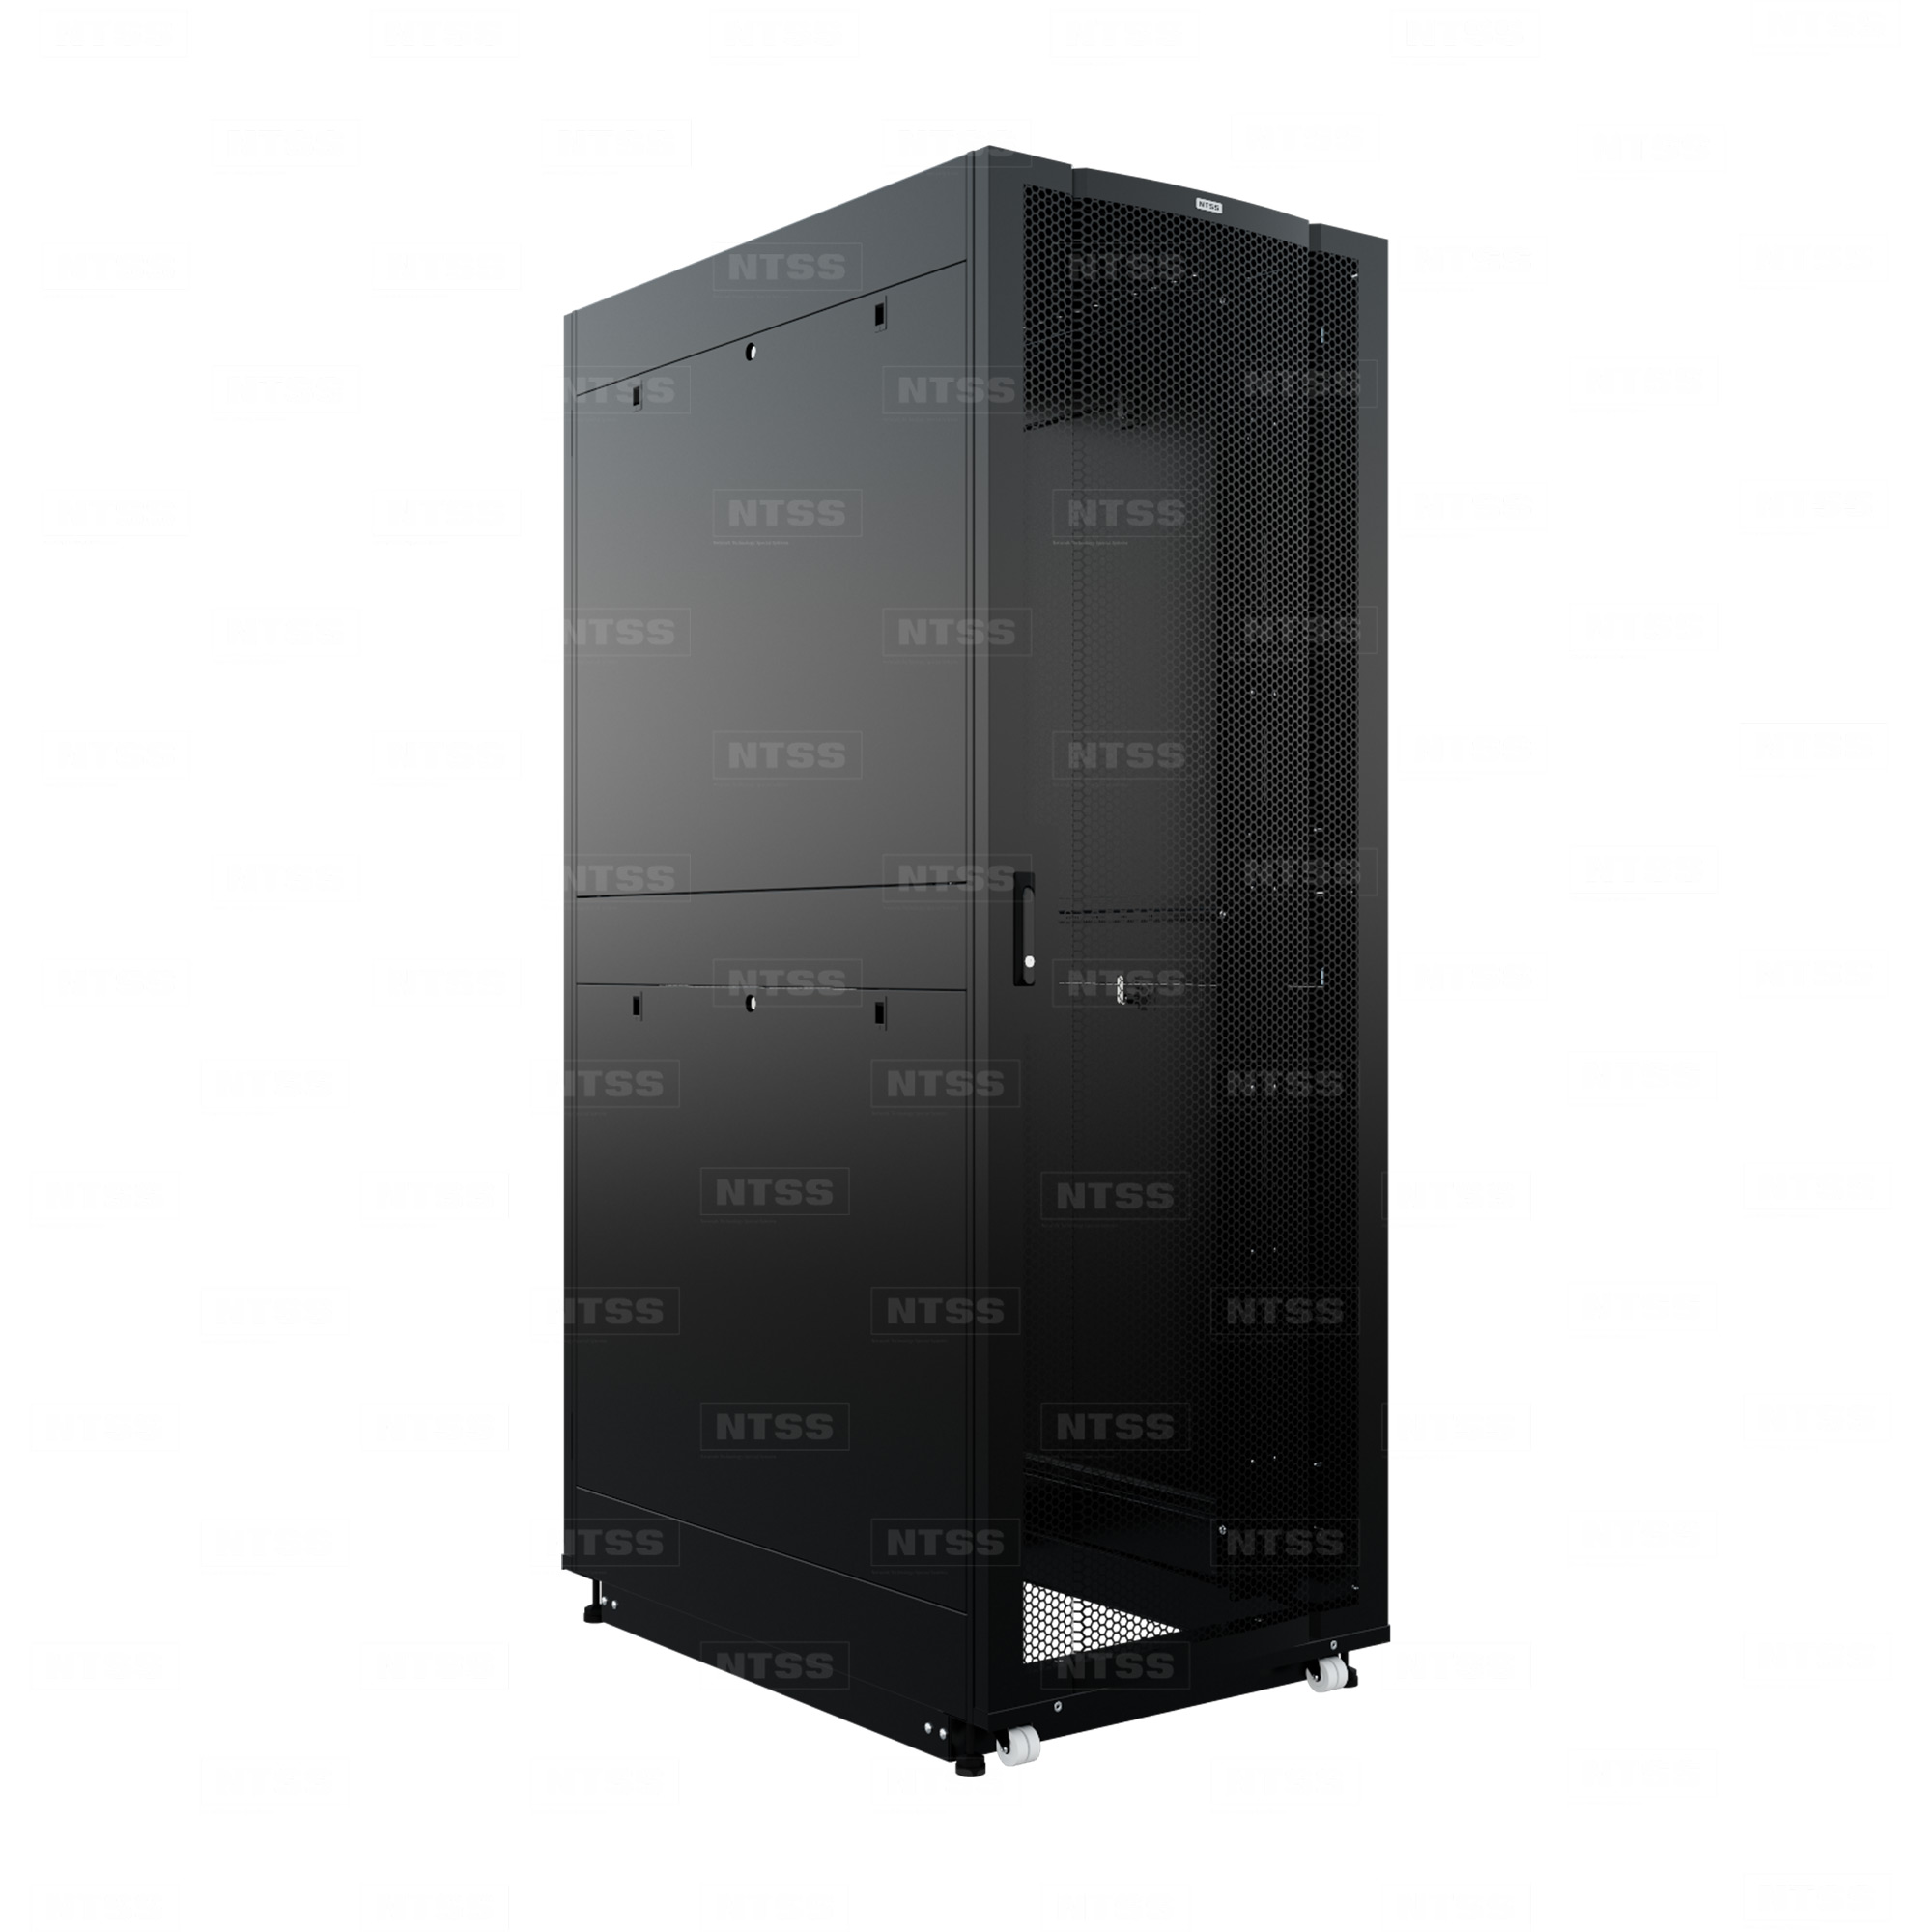 19" Напольный серверный шкаф NTSS ПРОЦОД PC МАСТЕР 42U 800х1200 мм, сварной в сборе, передняя дверь перфорация, задняя дверь распашная двойная перфорированная, боковые стенки, регулируемые опоры, ролики, черный RAL 9005